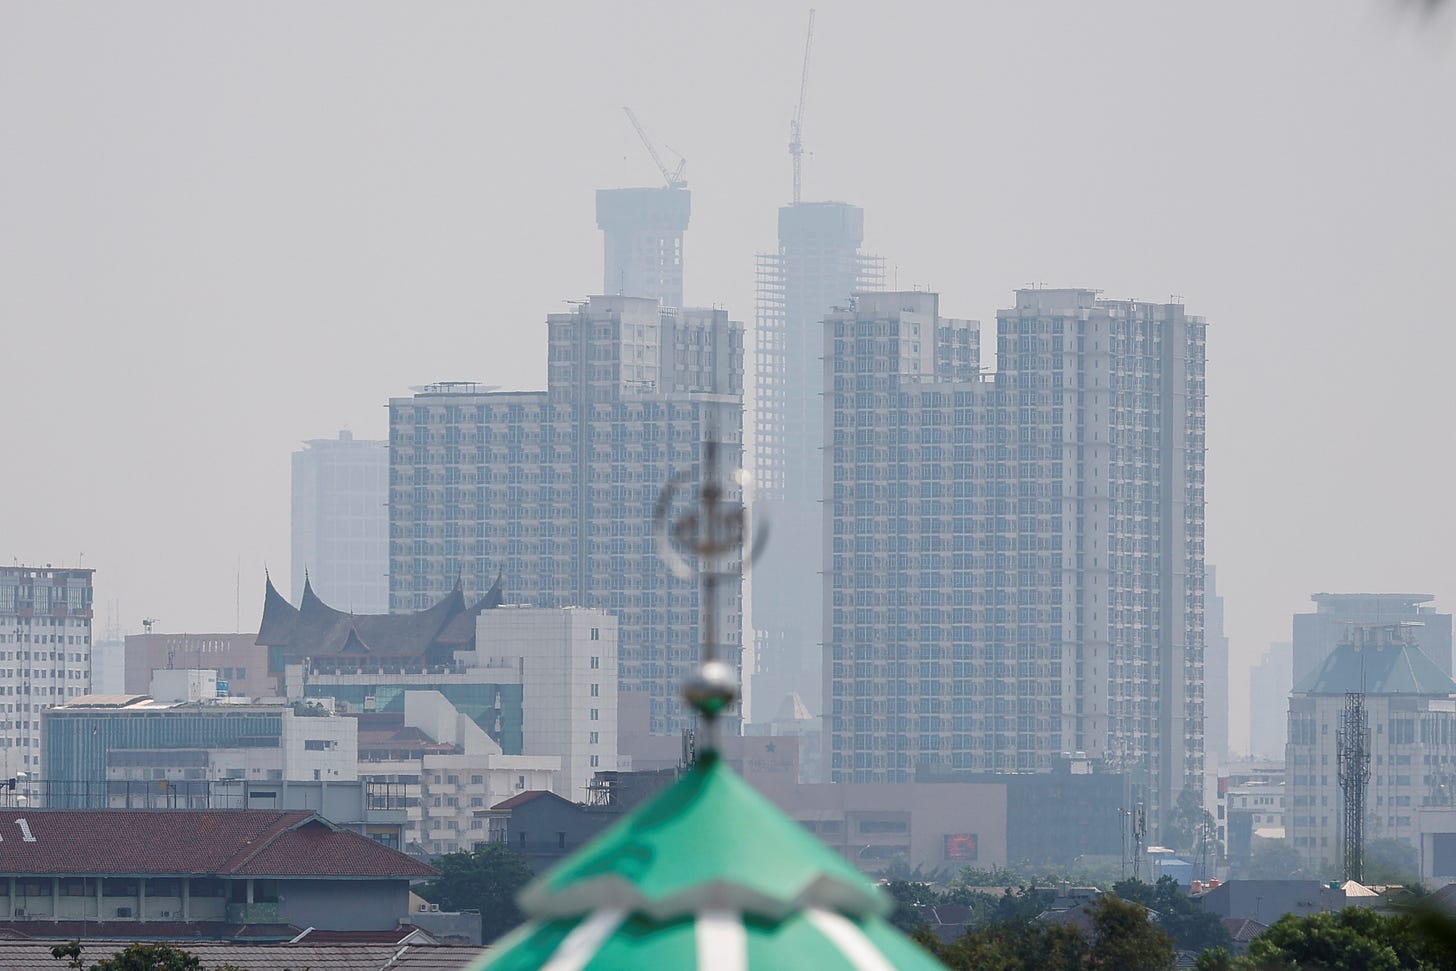 Air pollution in Jakarta